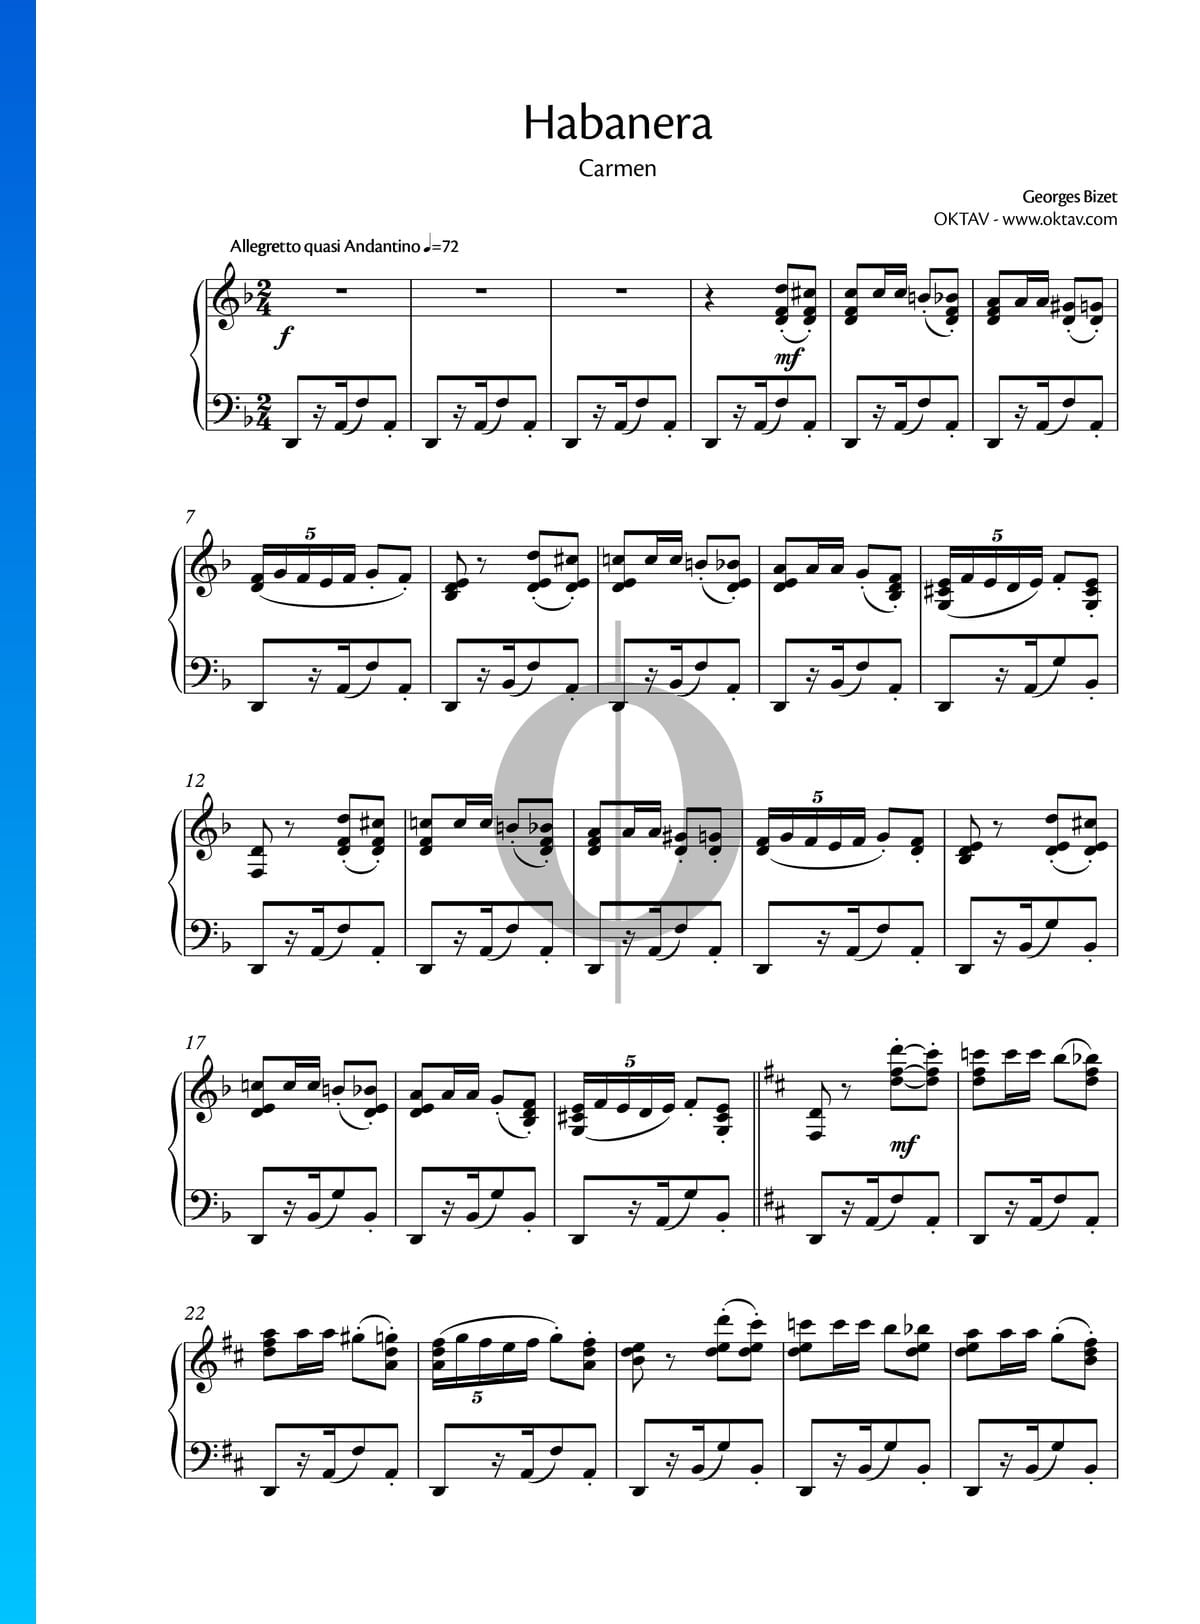 Actual encanto Laboratorio Habanera Partitura » Georges Bizet (Piano Solo) | Descarga PDF - OKTAV